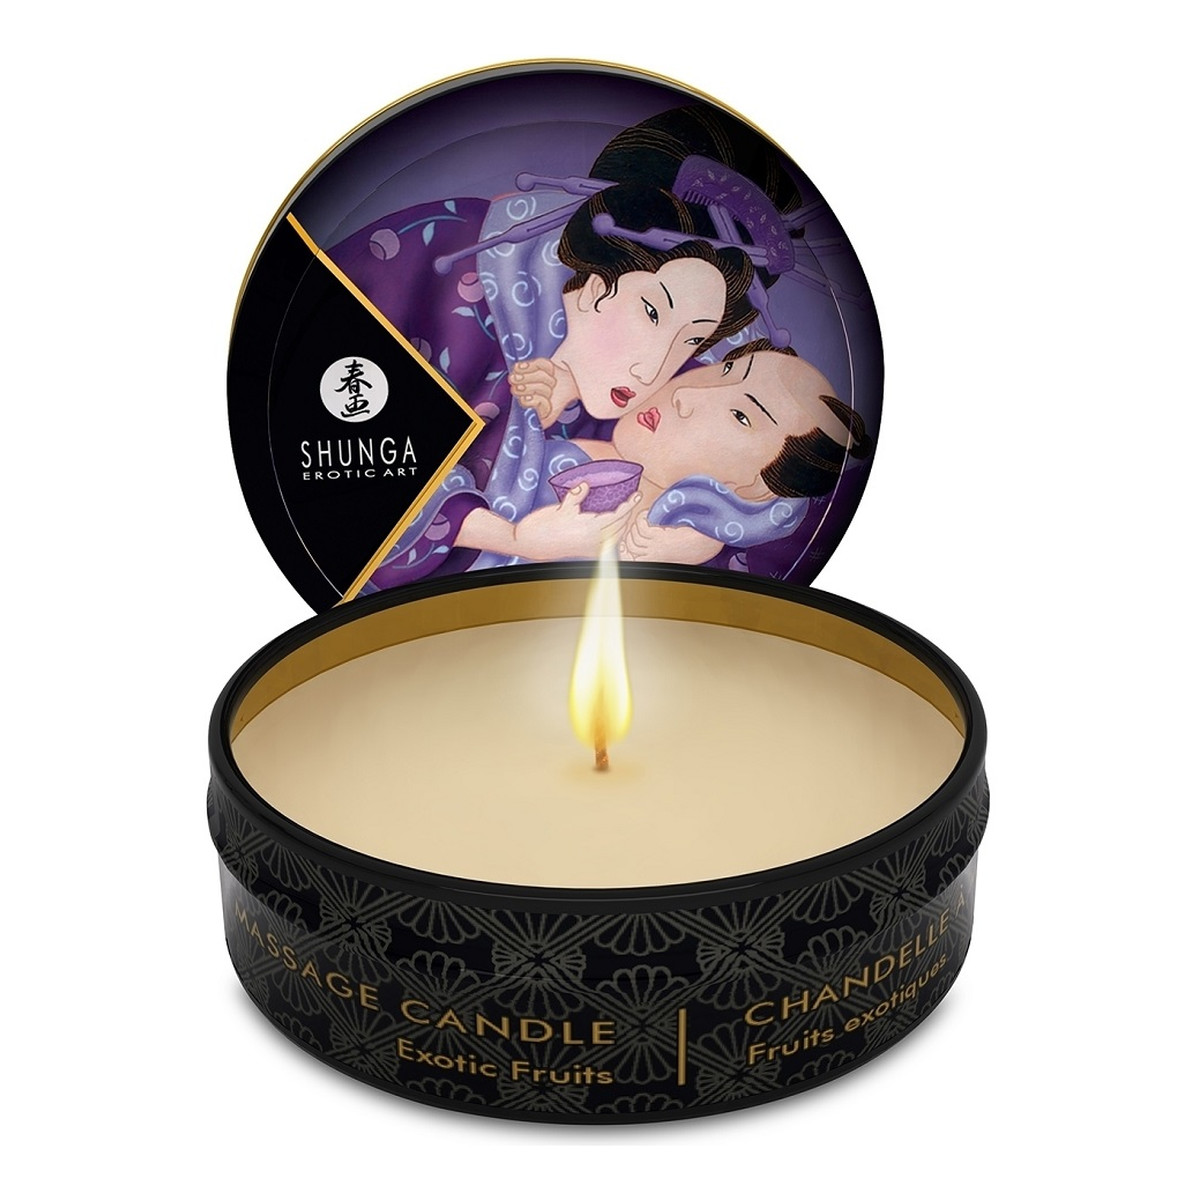 Shunga Erotic Art Excitation massage candle świeca do masażu exotic fruits 30ml